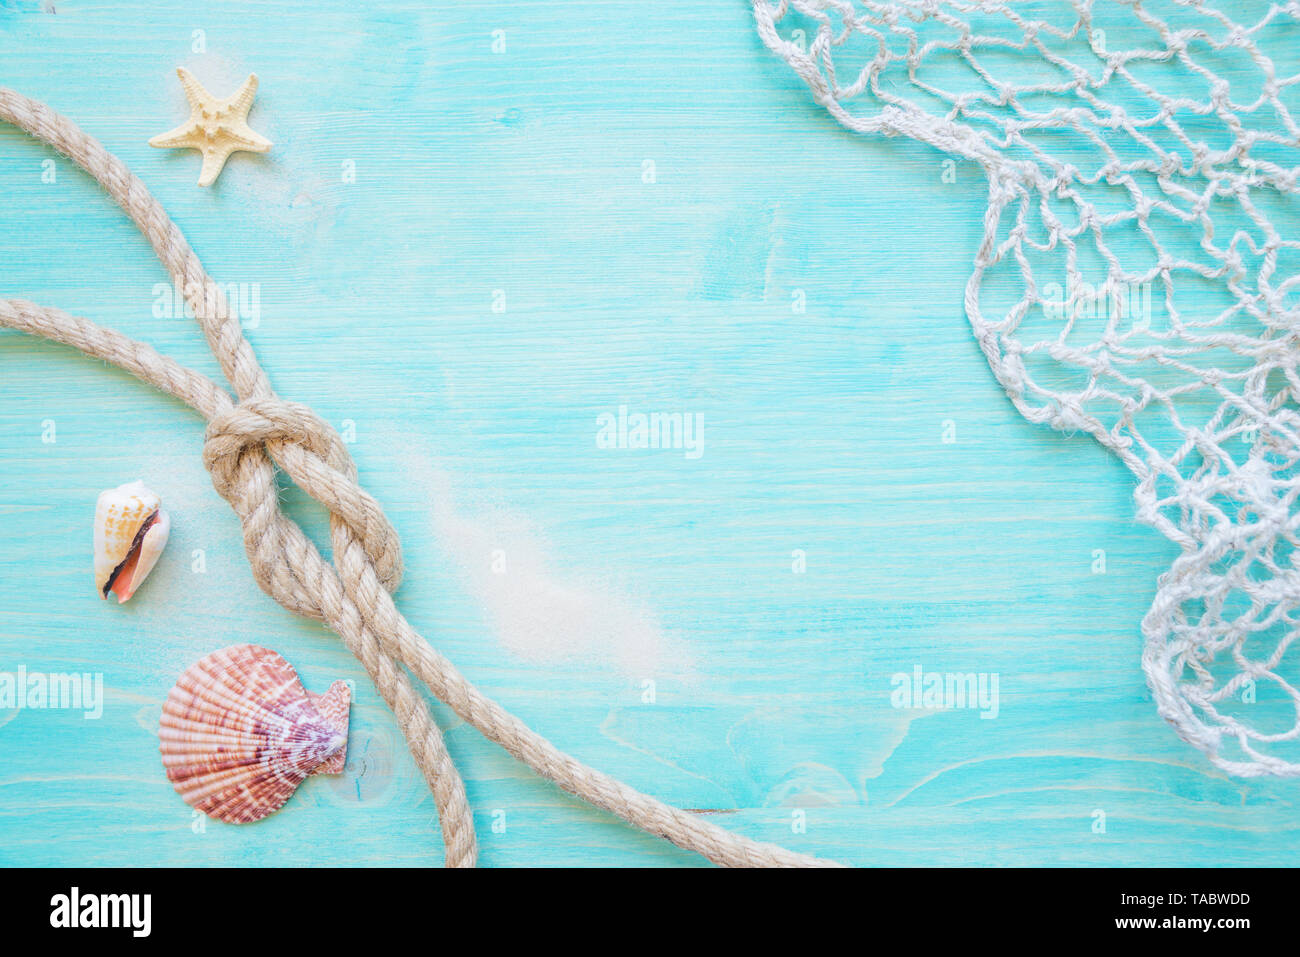 Corde de chanvre brut knot, la mer, des étoiles de hells et la pêche réseau sont sur le fond bleu pâle terrasse en bois. Concept Marine Banque D'Images